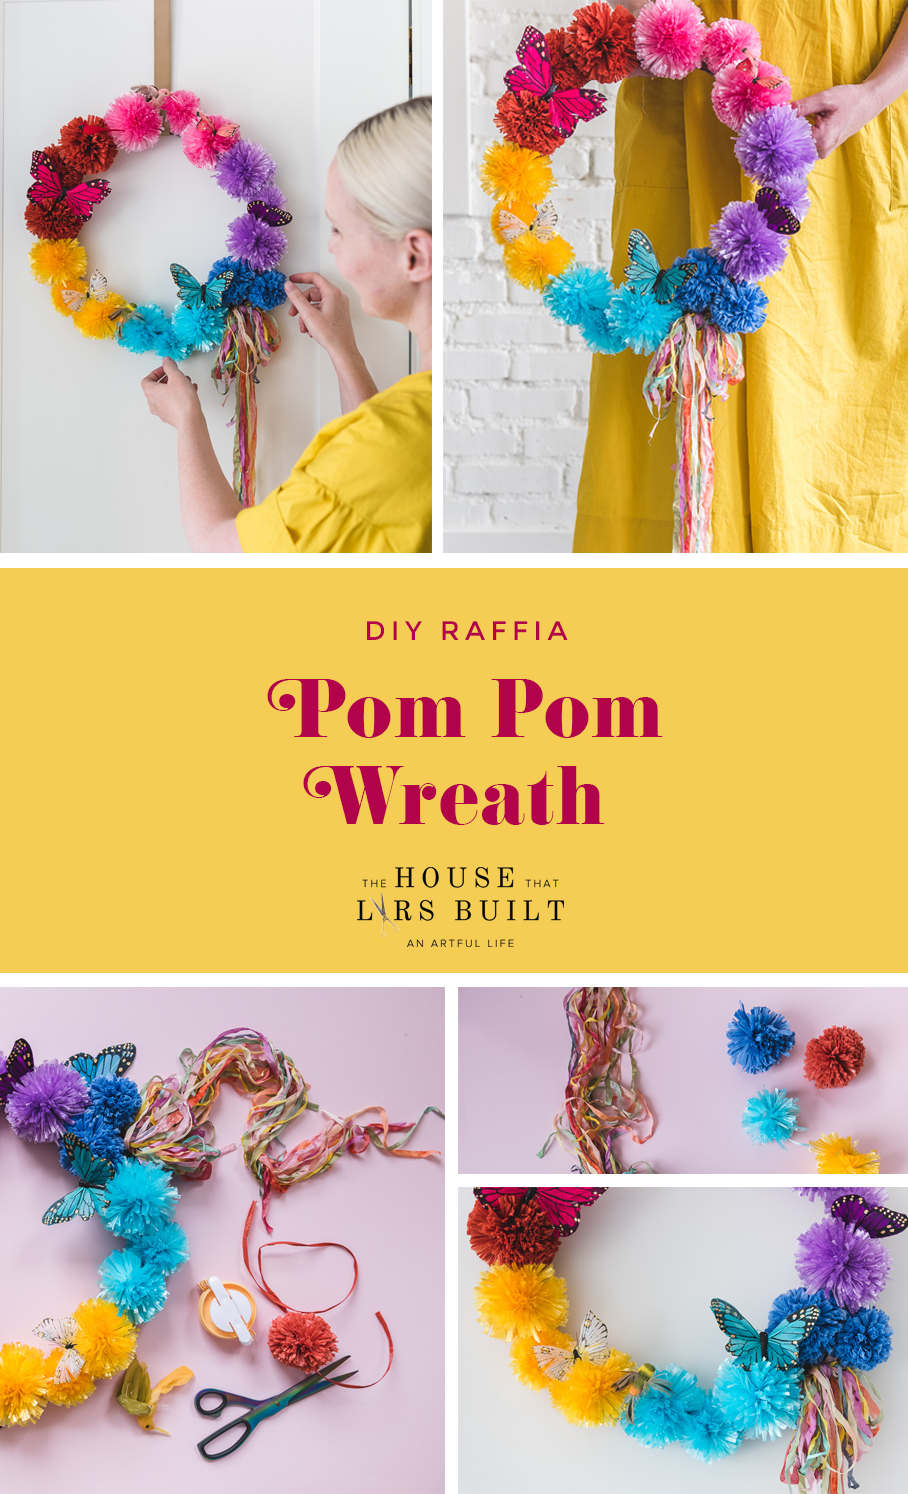 DIY Raffia Pom Pom Wreath